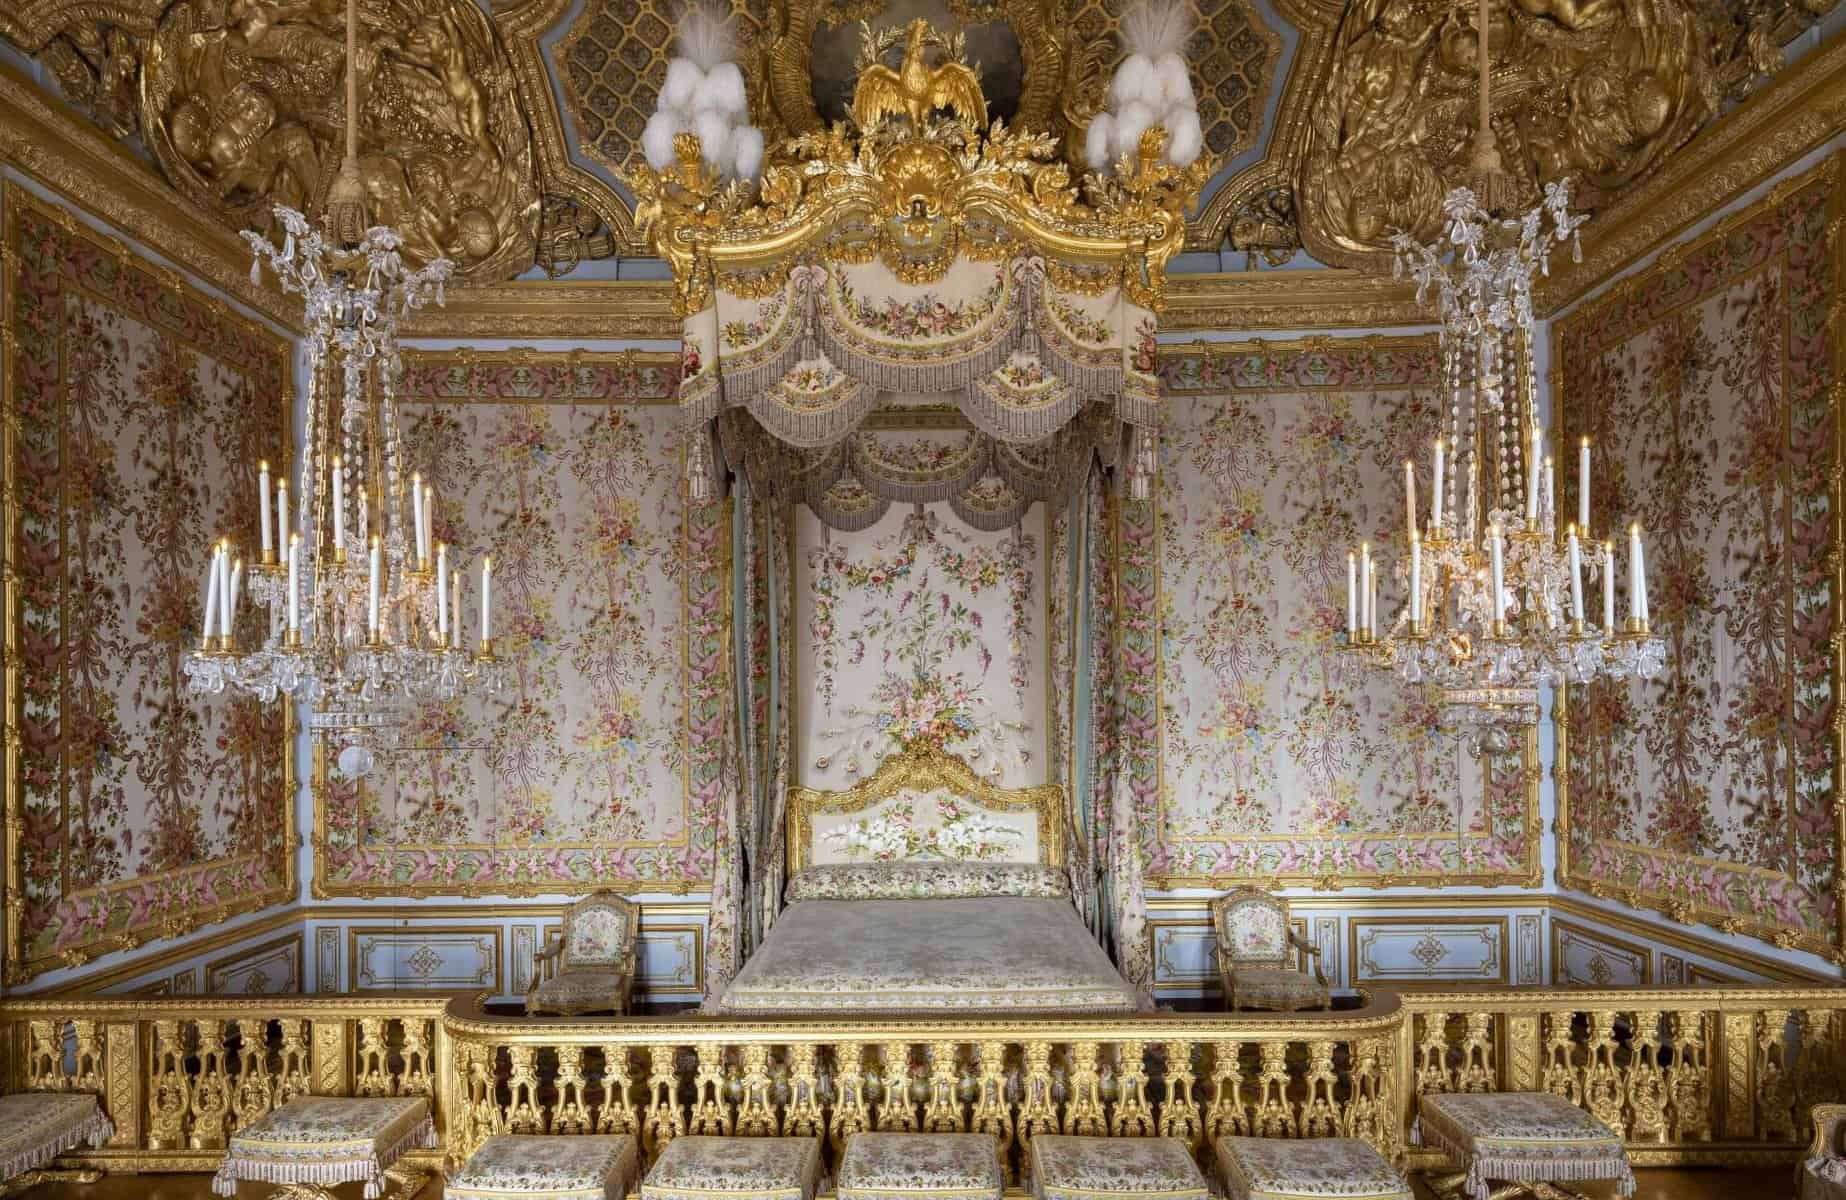 Aposentos reales. En la intimidad del Palacio de Versalles.